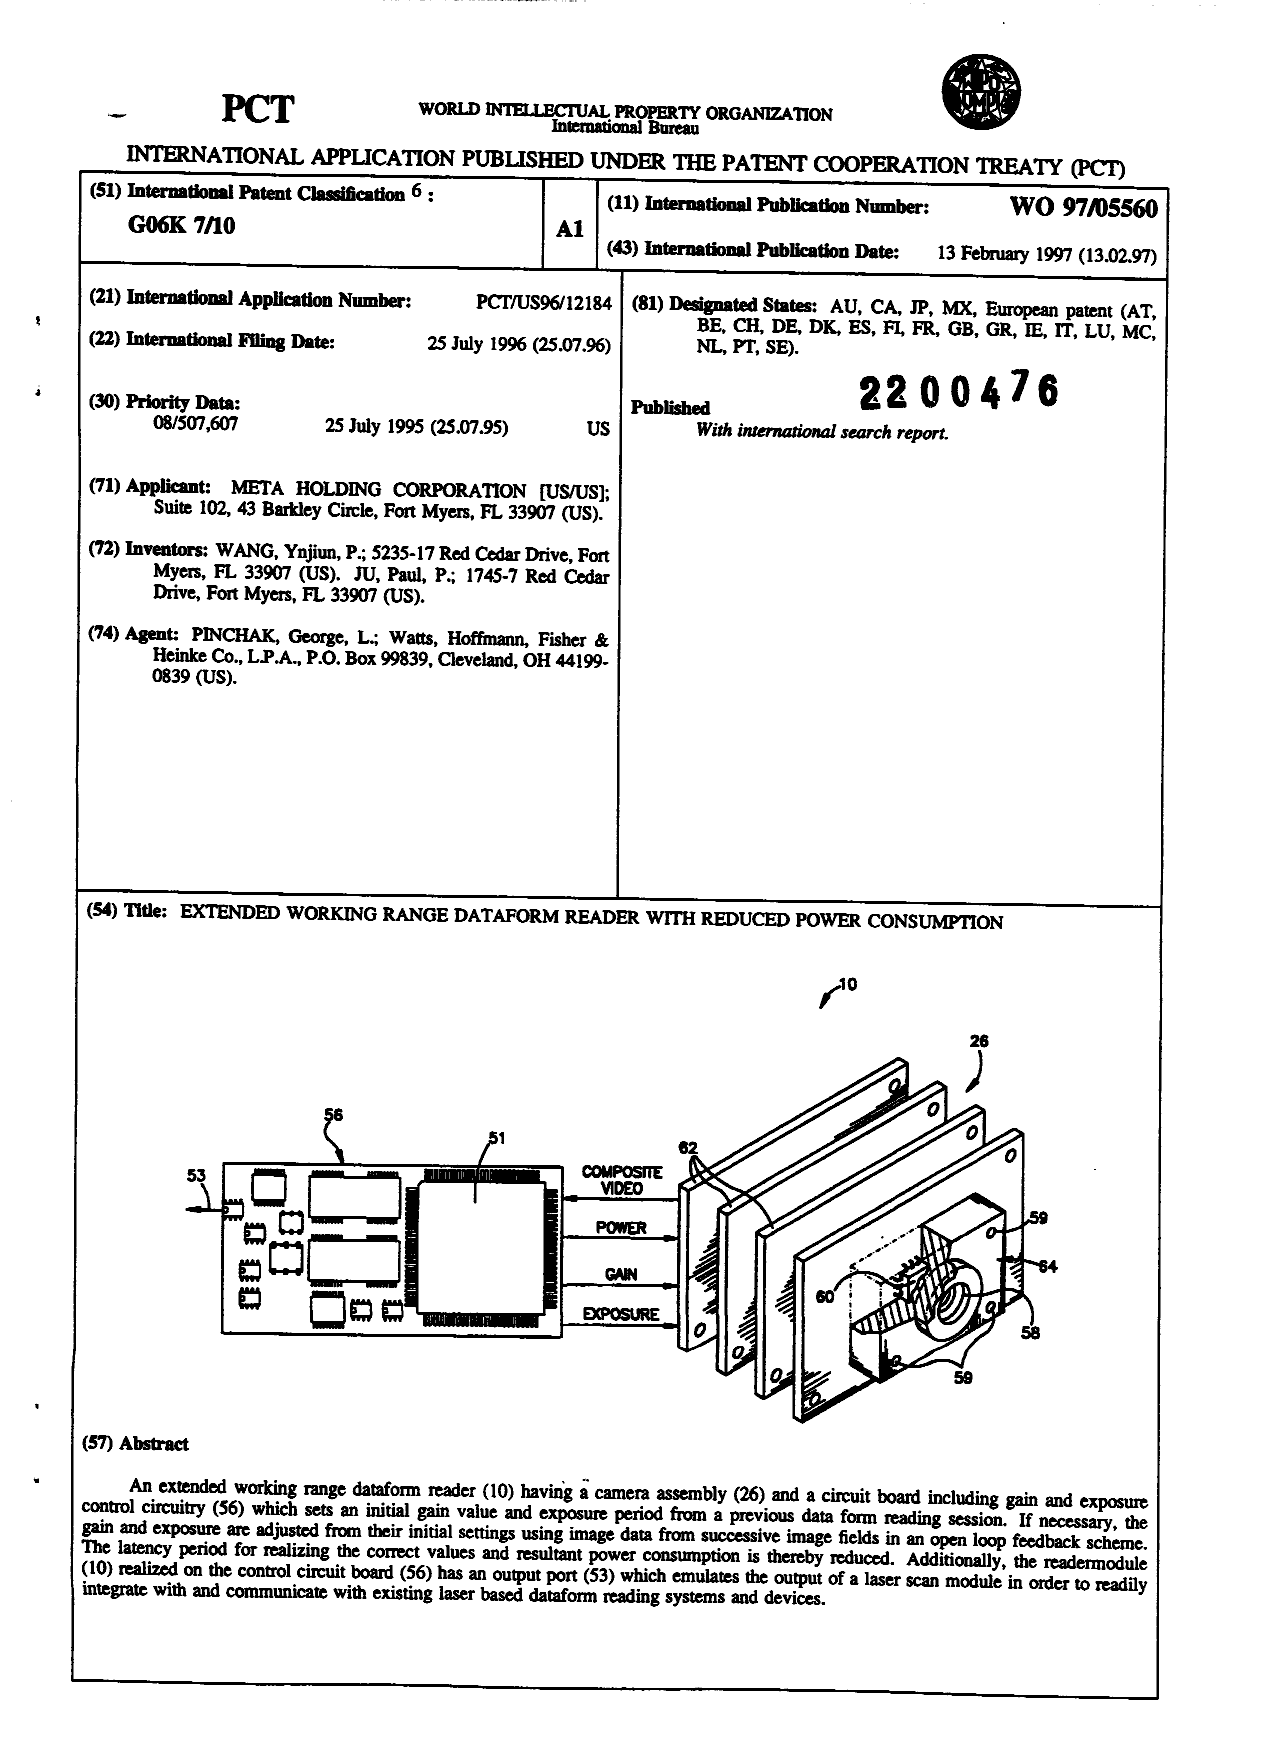 Document de brevet canadien 2200476. Abrégé 19970319. Image 1 de 1